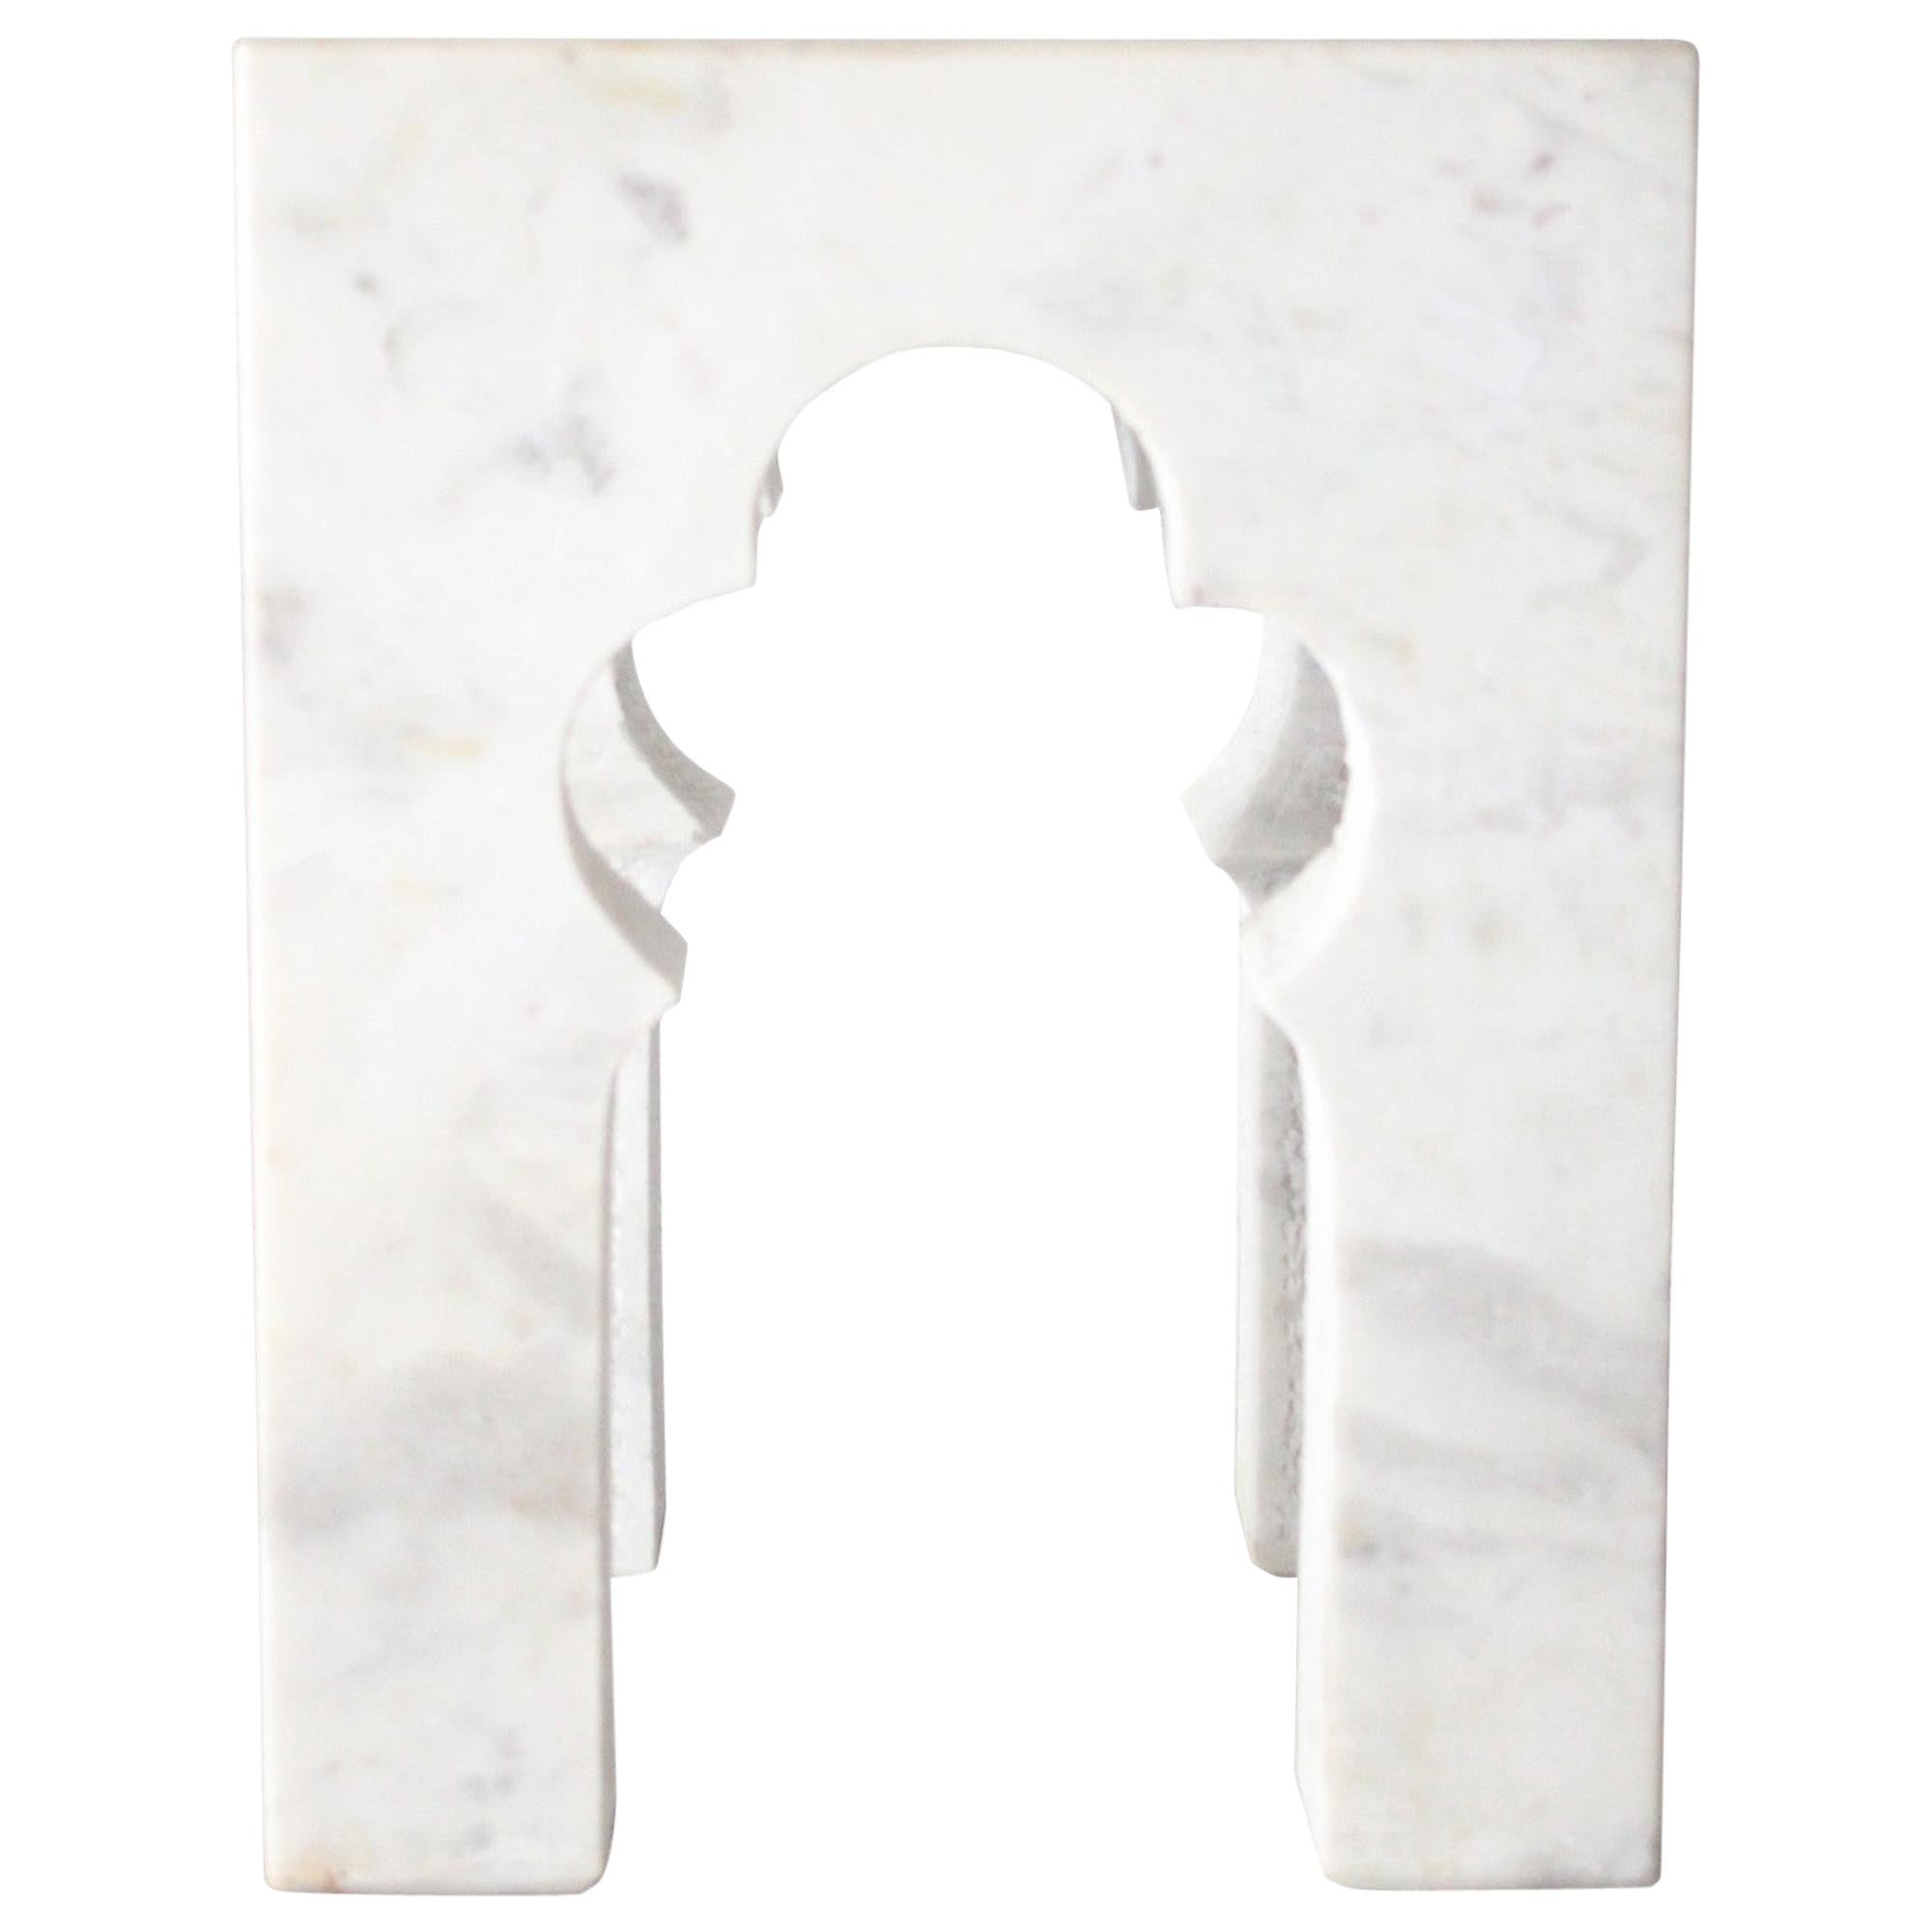 Table d'appoint Jahangir en marbre blanc par Paul Mathieu pour Stephanie Odegard